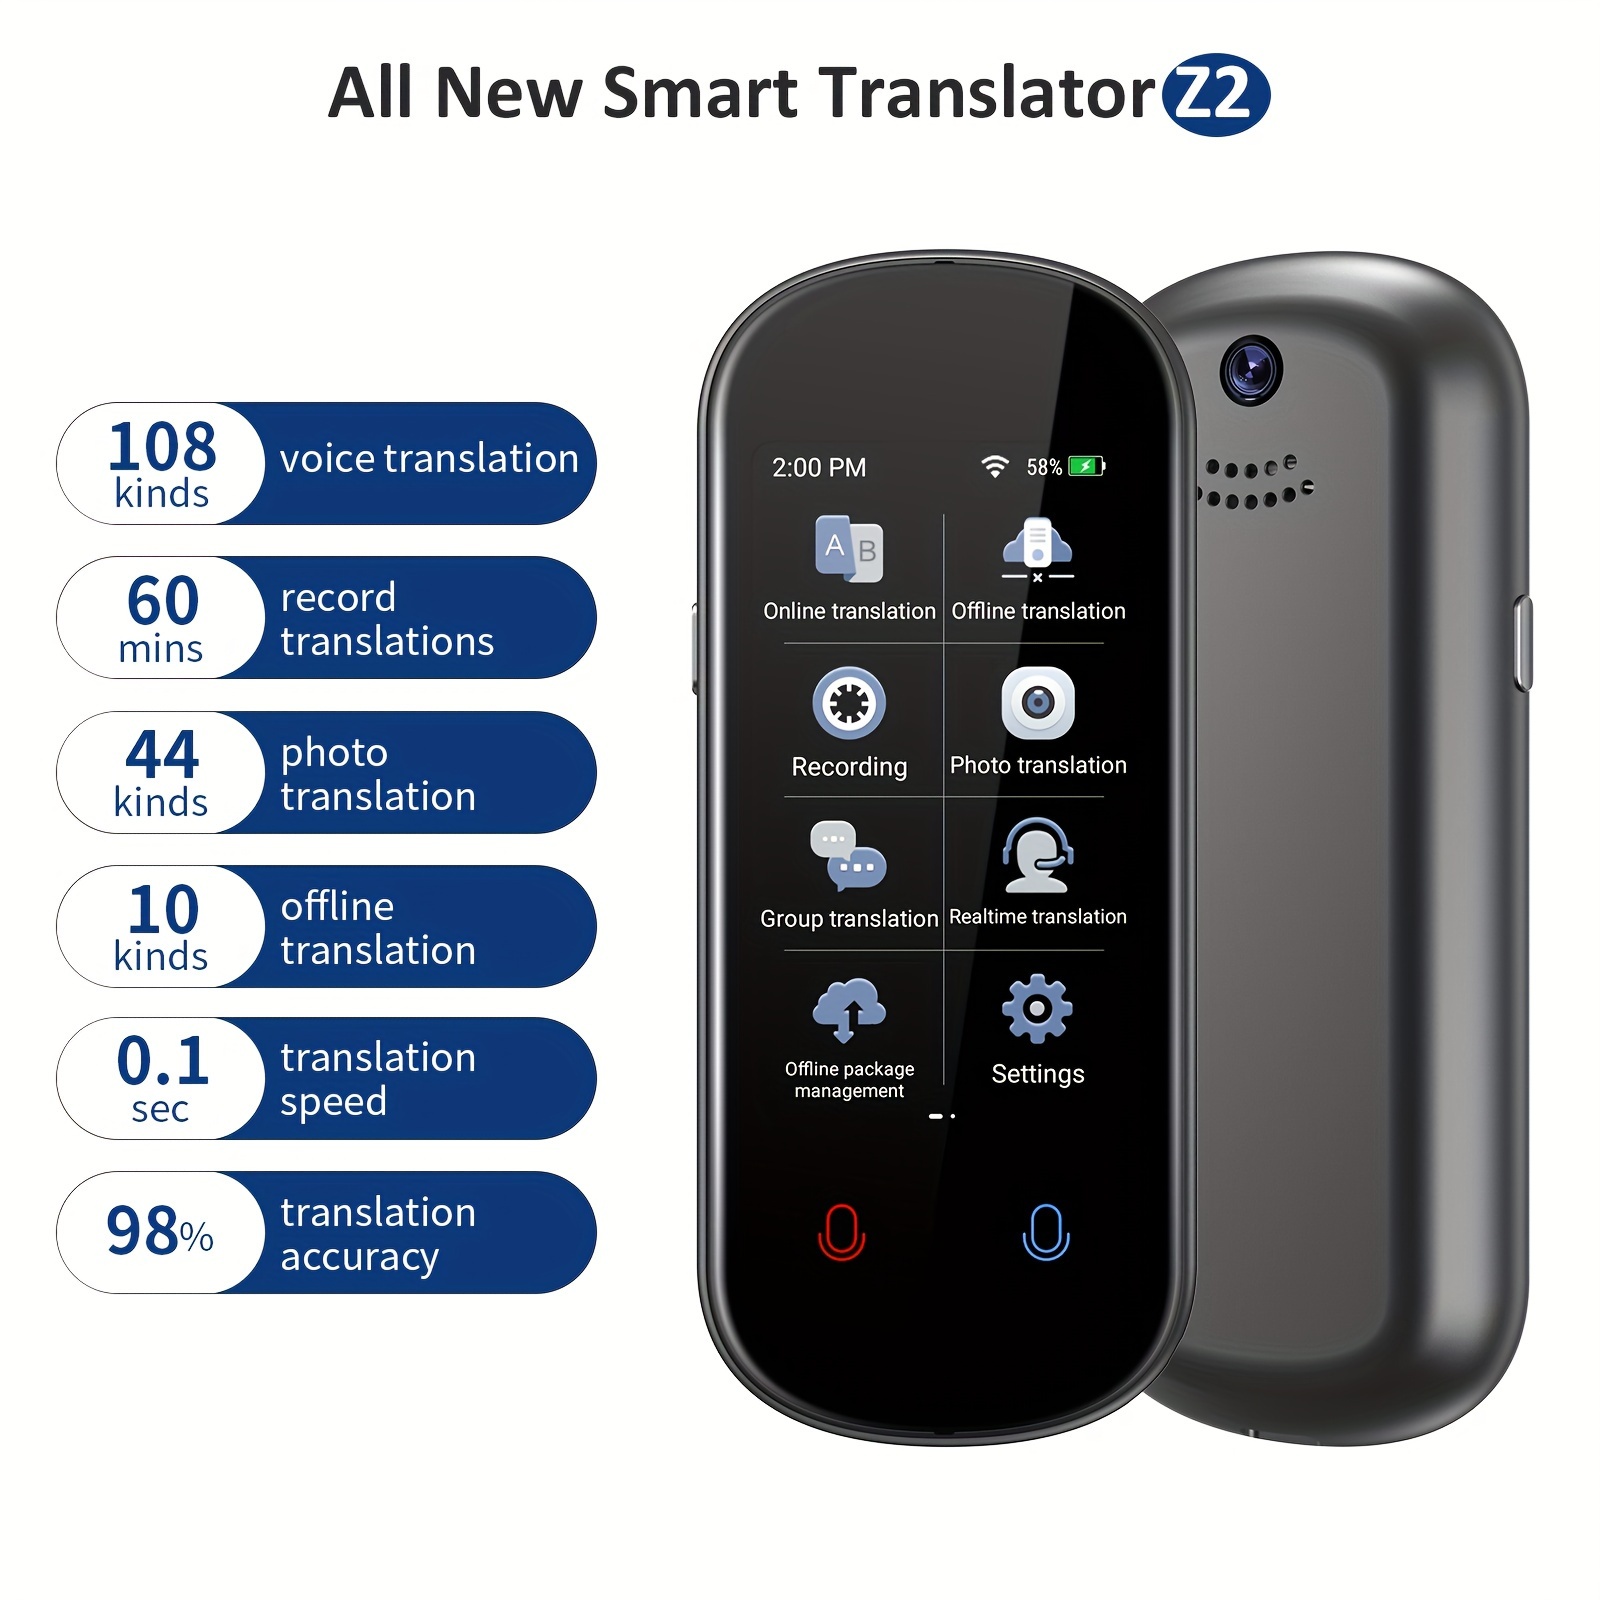 Traductor inteligente de voz instantáneo V10, compatible con 107